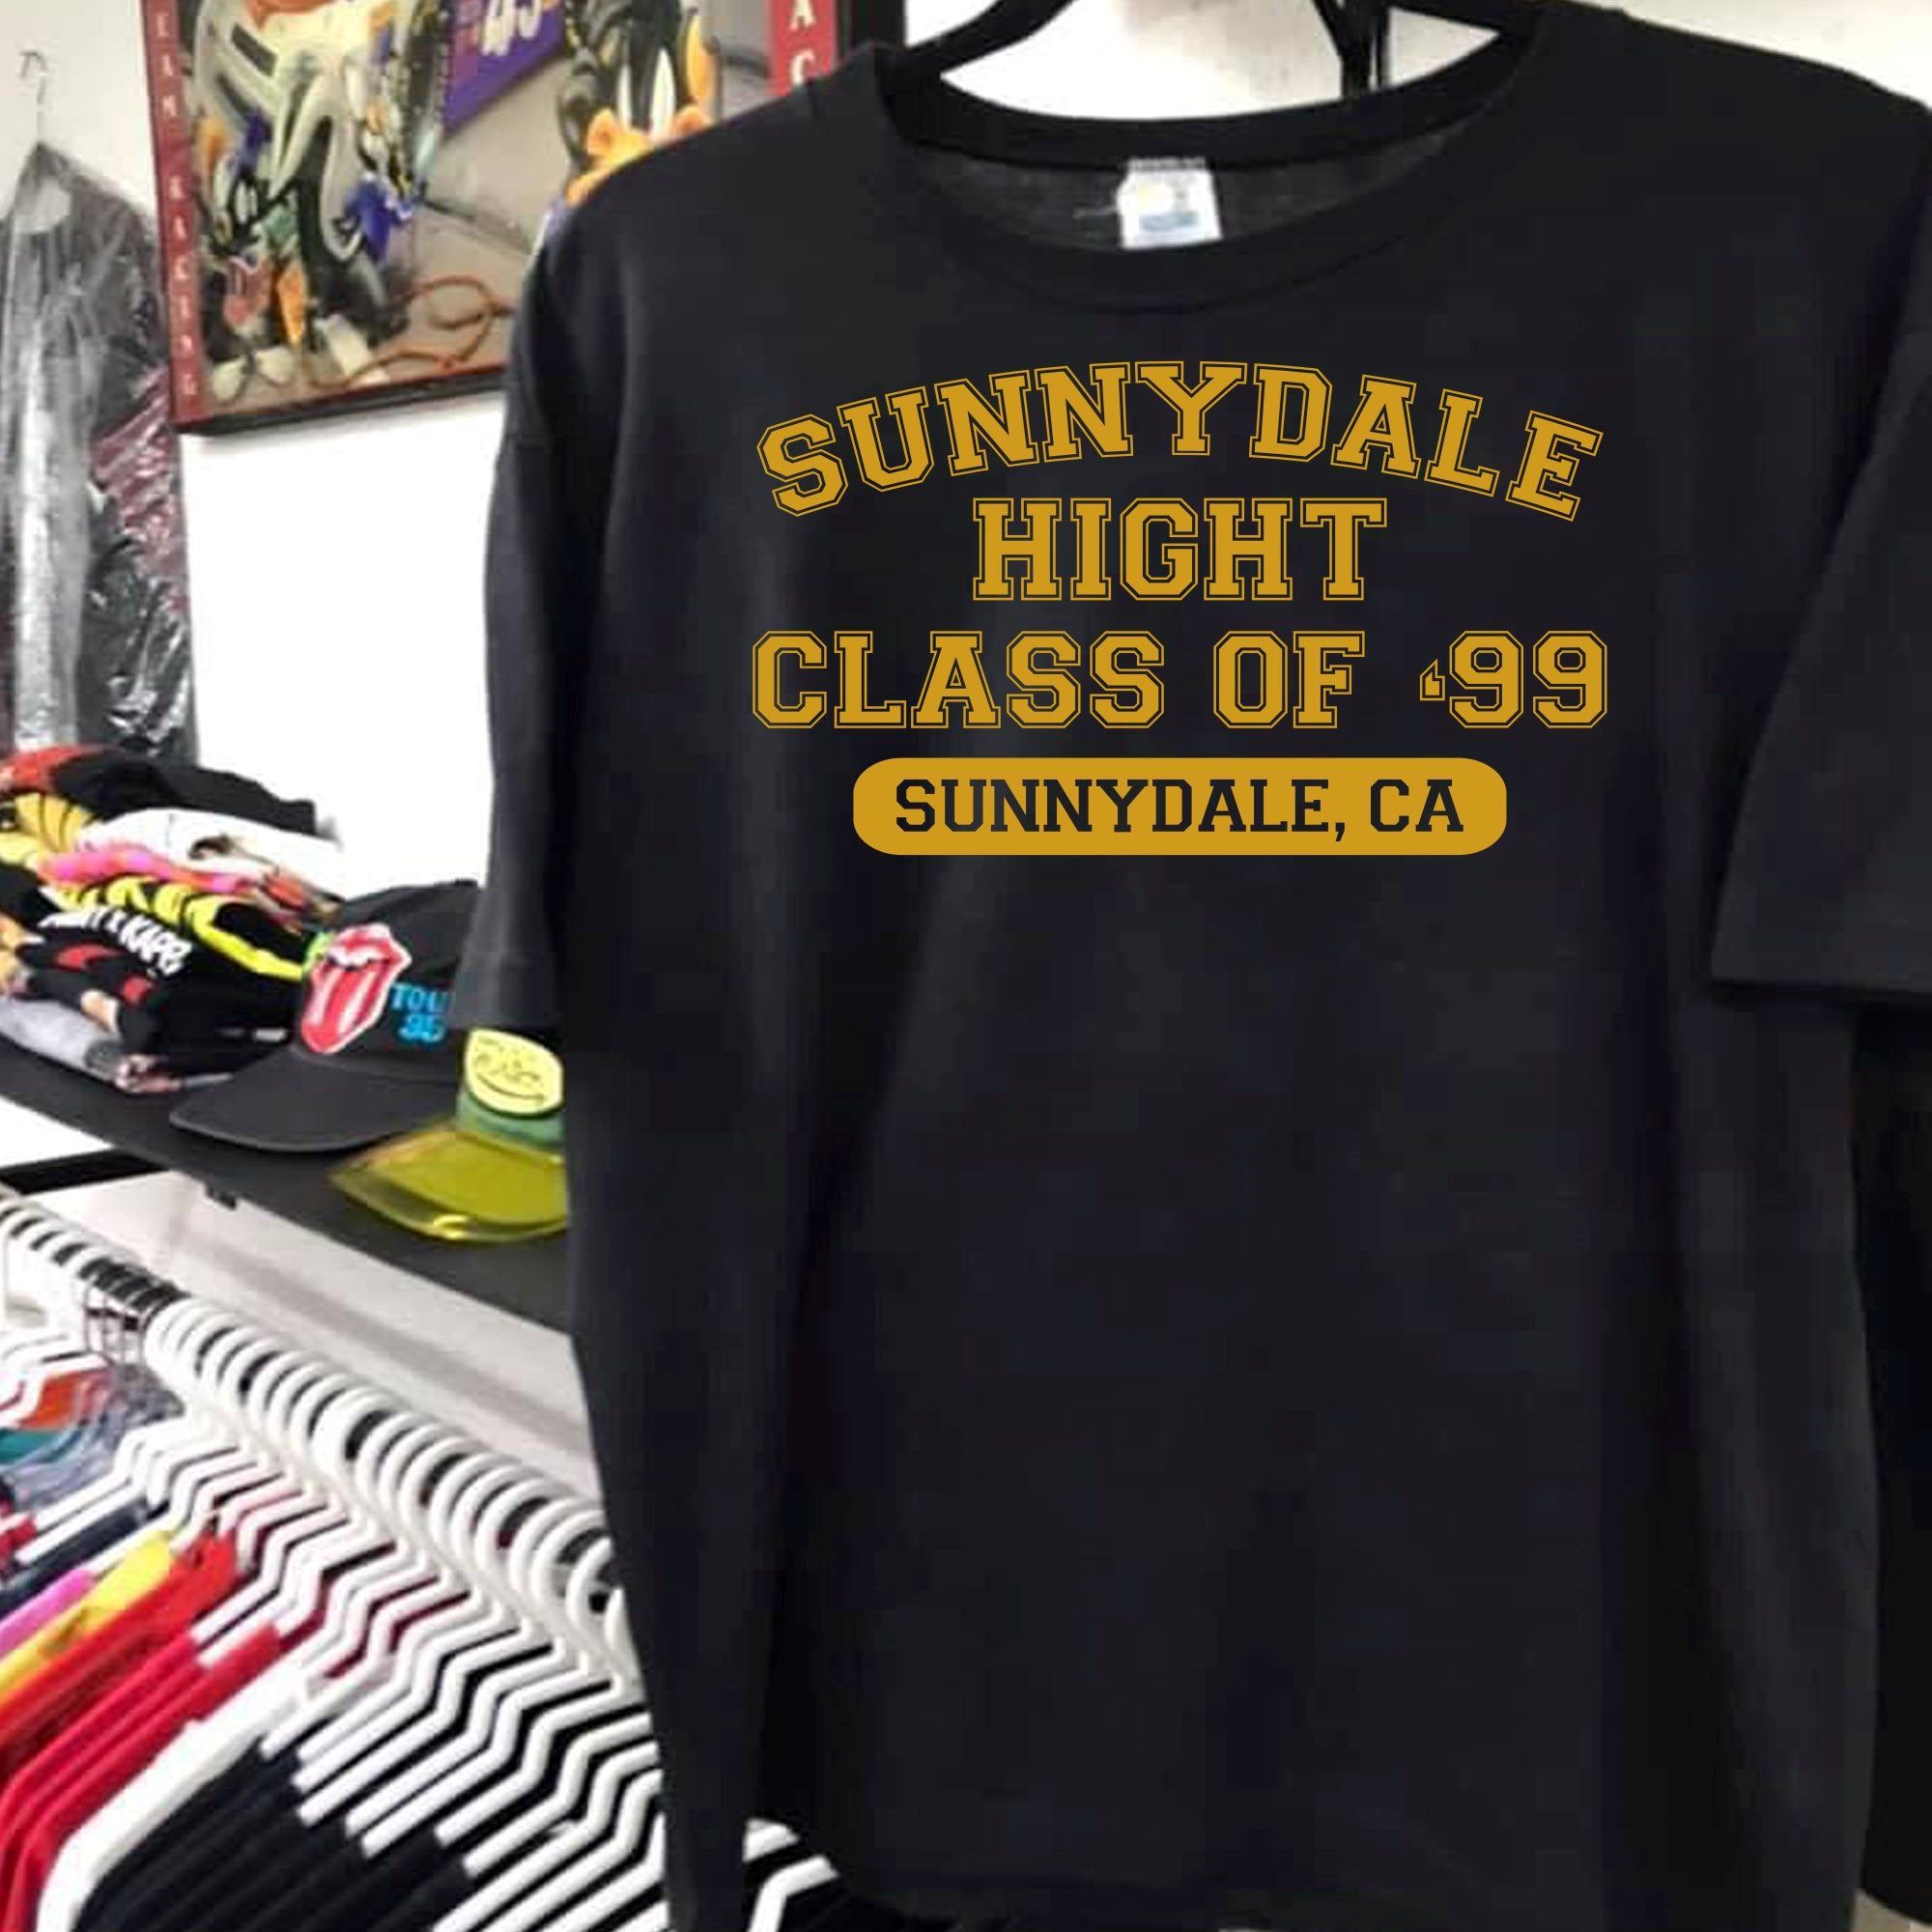 Best Buffy The Vampire Slayer T-shirt Sunnydale High Class Of'99 Mens Funny Inspired Design Print Art Shirt Gift For Men Women Unisex T-shirt 